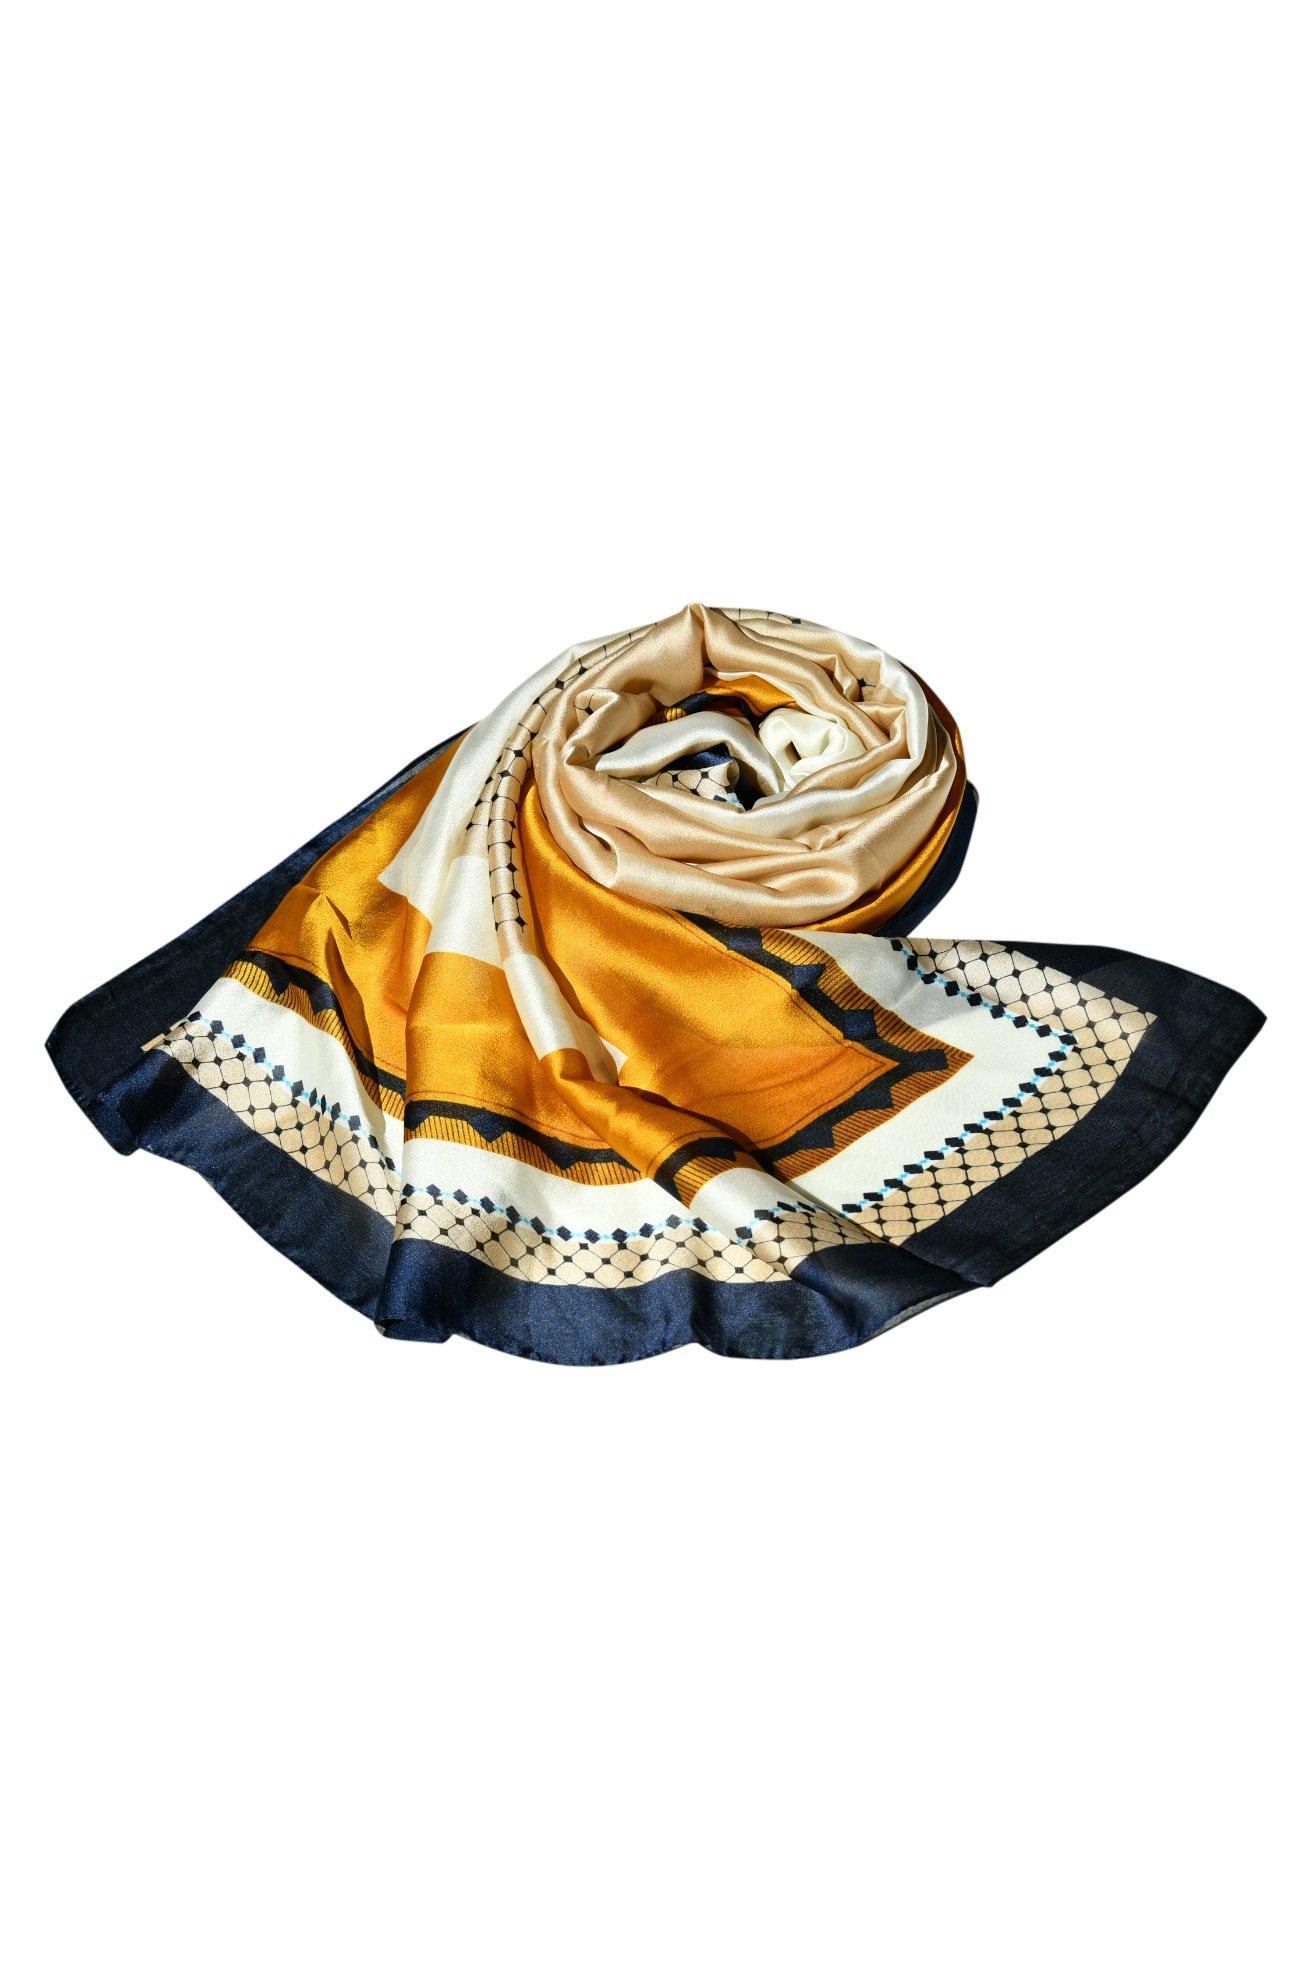 Высококачественная шаль, модельерский шелковый шарф с принтом для женщин, стильный шелковый платок, вечеринка, элегантность для любого наряда Blue Chilli, мультиколор талит молитвенная шаль мессиановая талловая молитвенная шаль разработанная в израиле для женщин